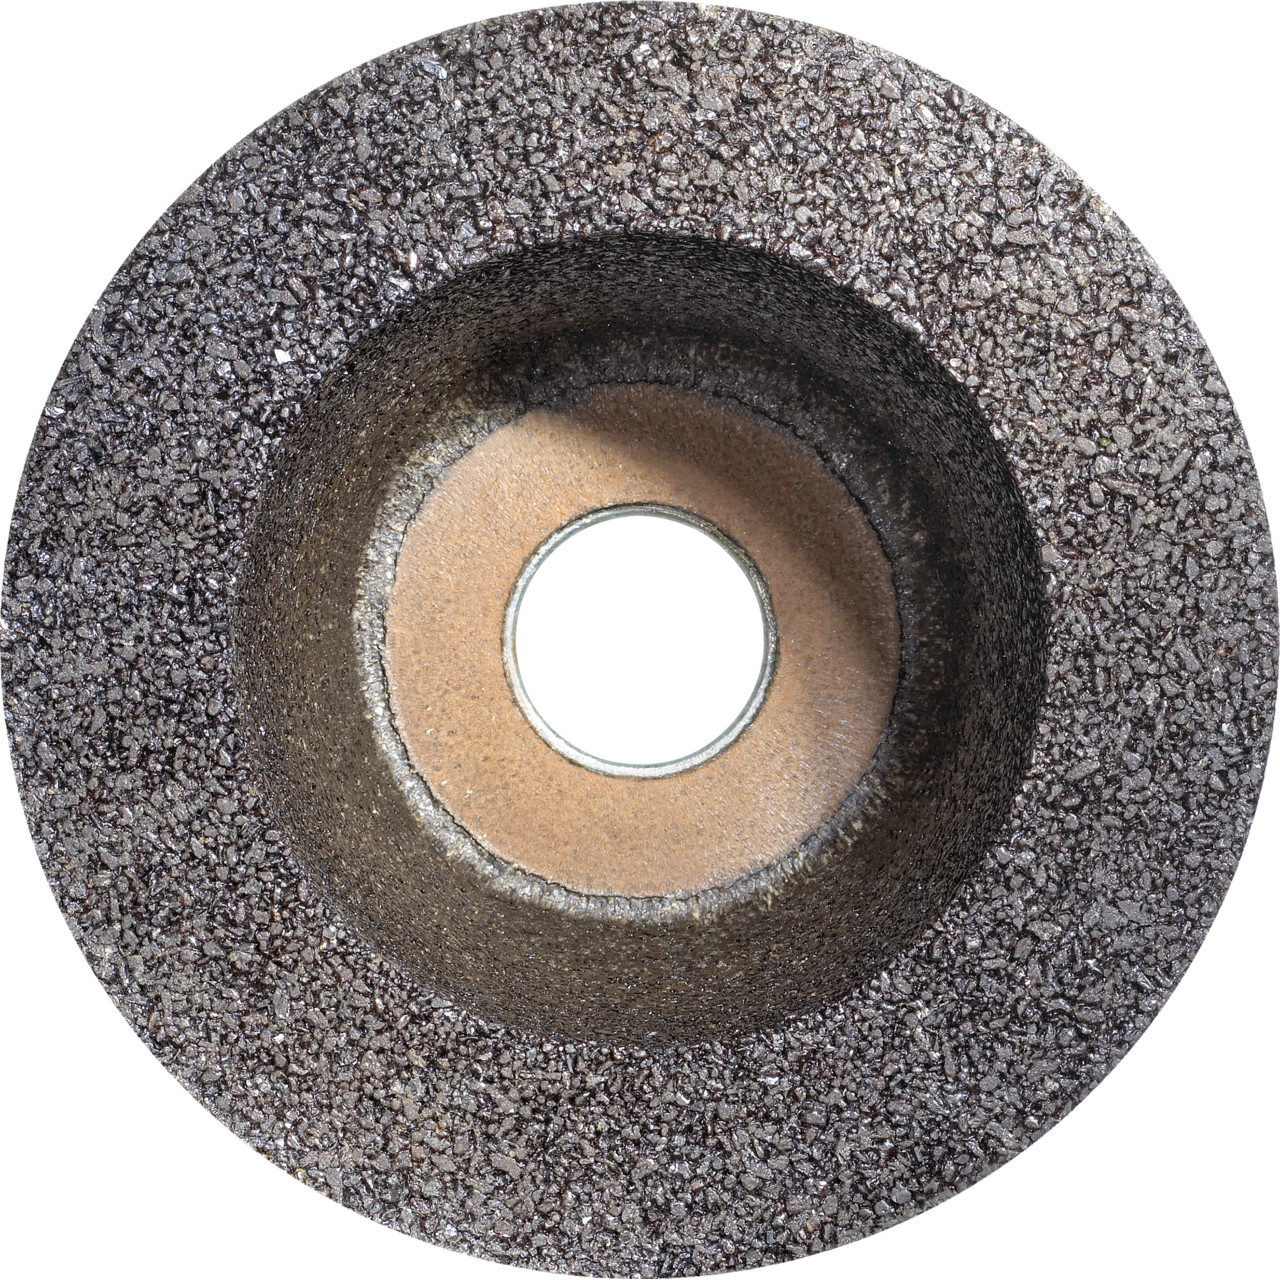 Tazza in resina sintetica Tyrolit D/JxDxH 110/90x55x22.2 Per acciaio, forma: 11BT (ruota a tazza), Art. 895669